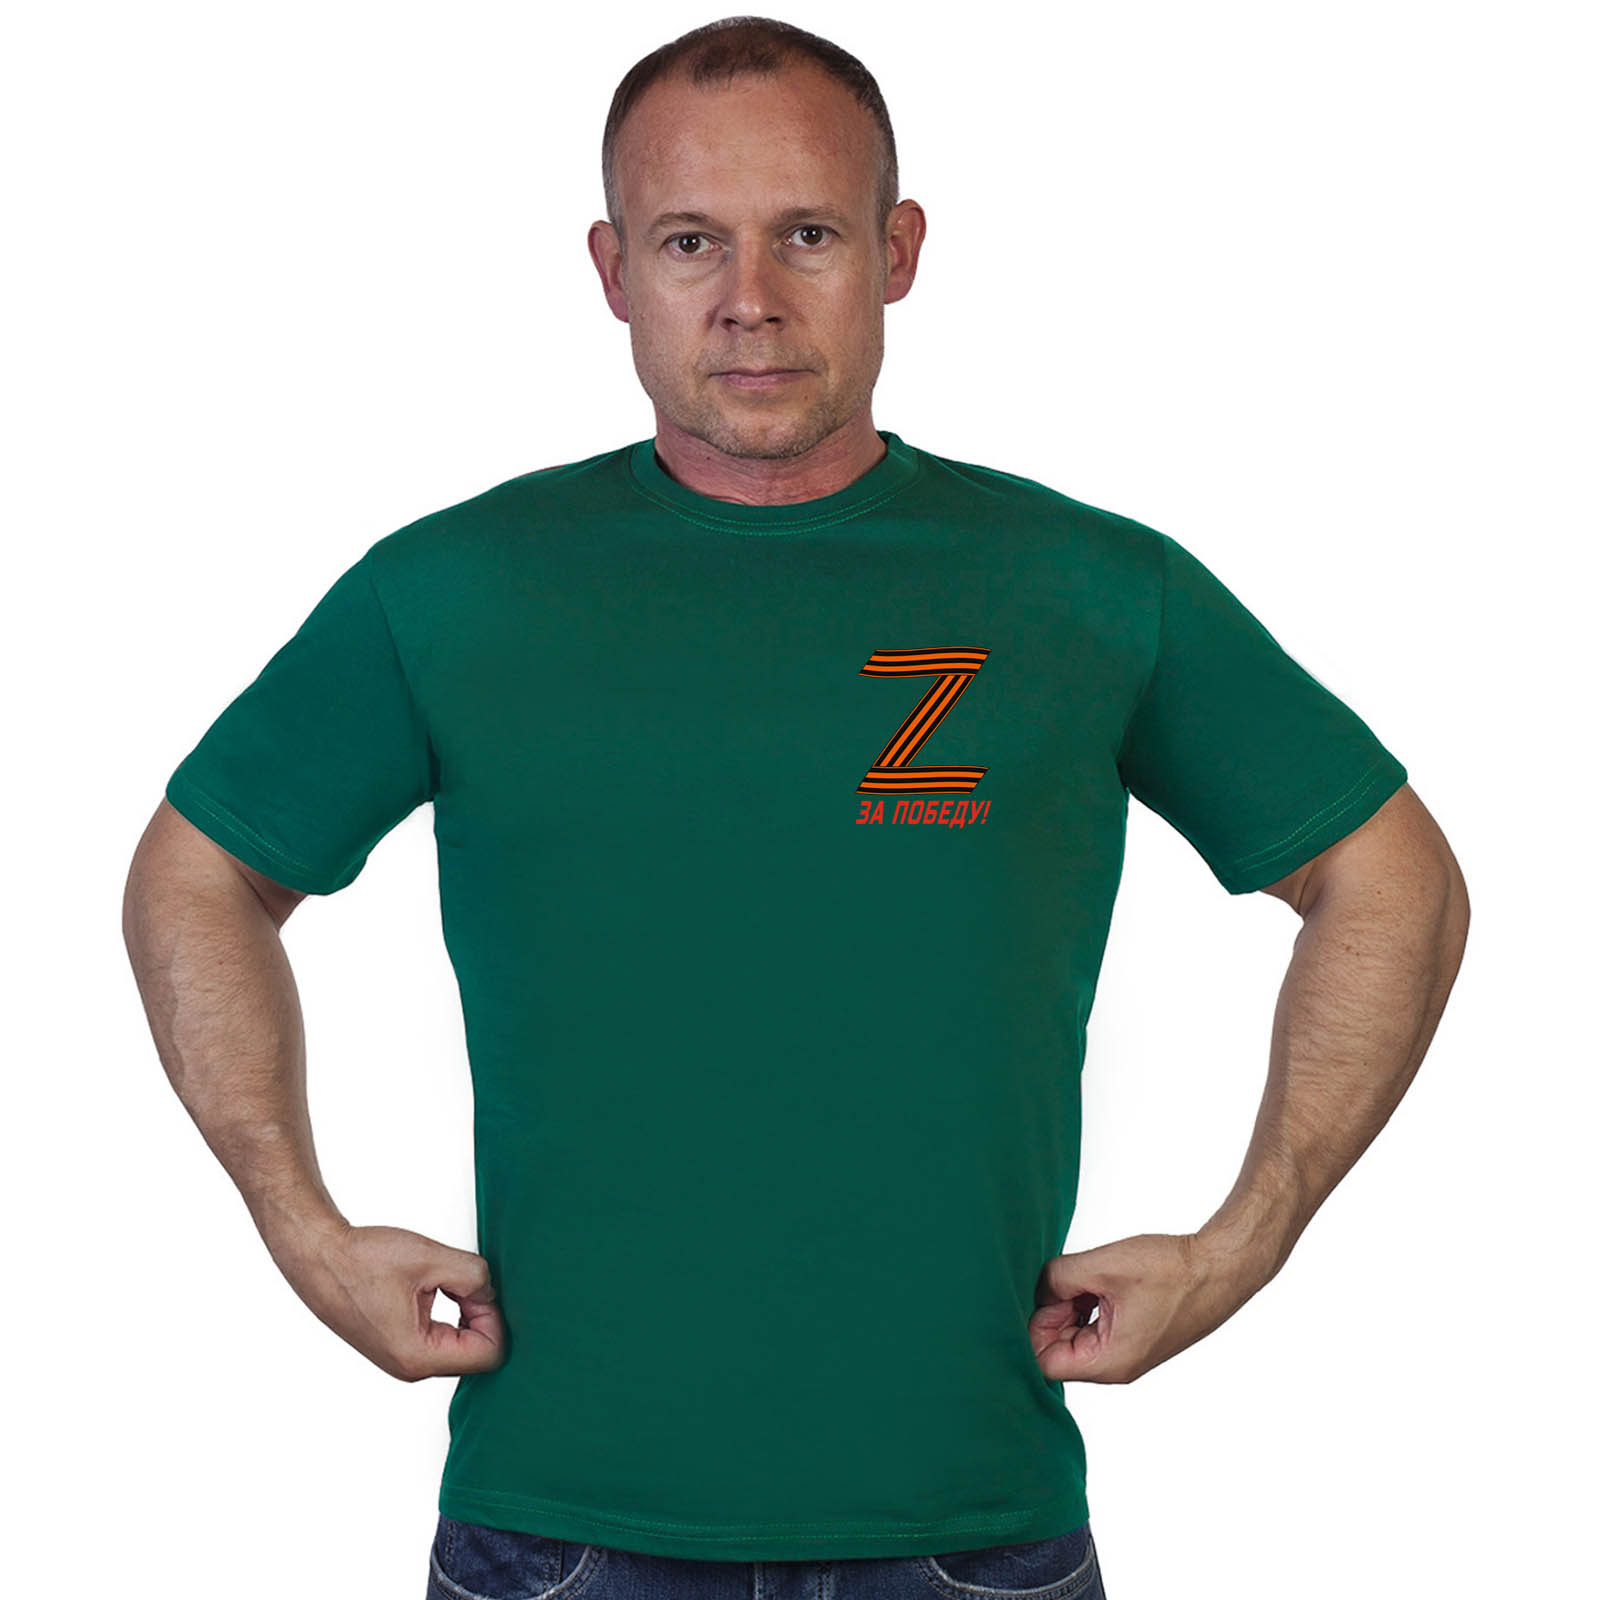 Купить футболку Zа Победу